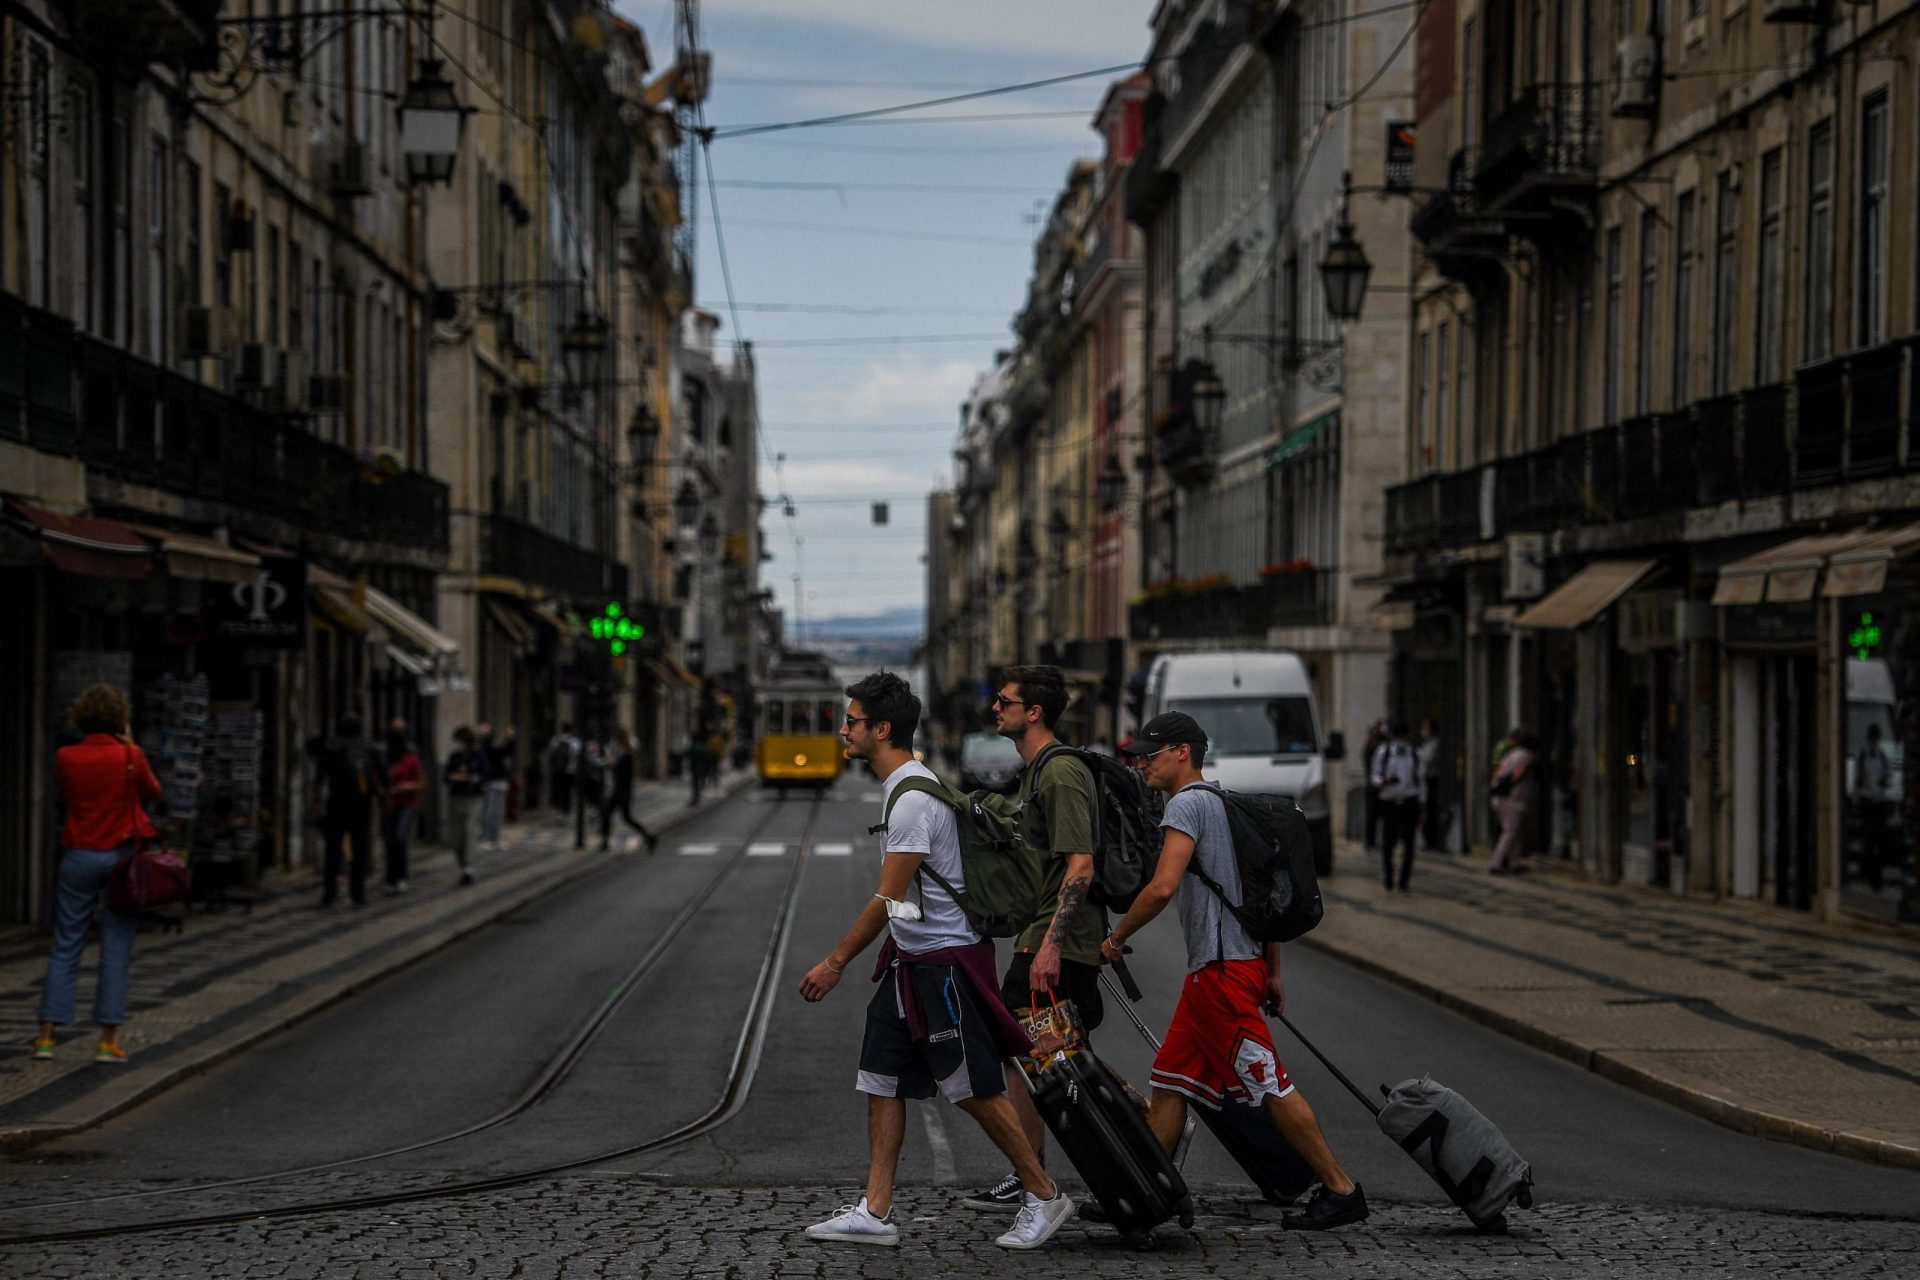 Lisboa estreia-se nos certificados digitais em viagens internas